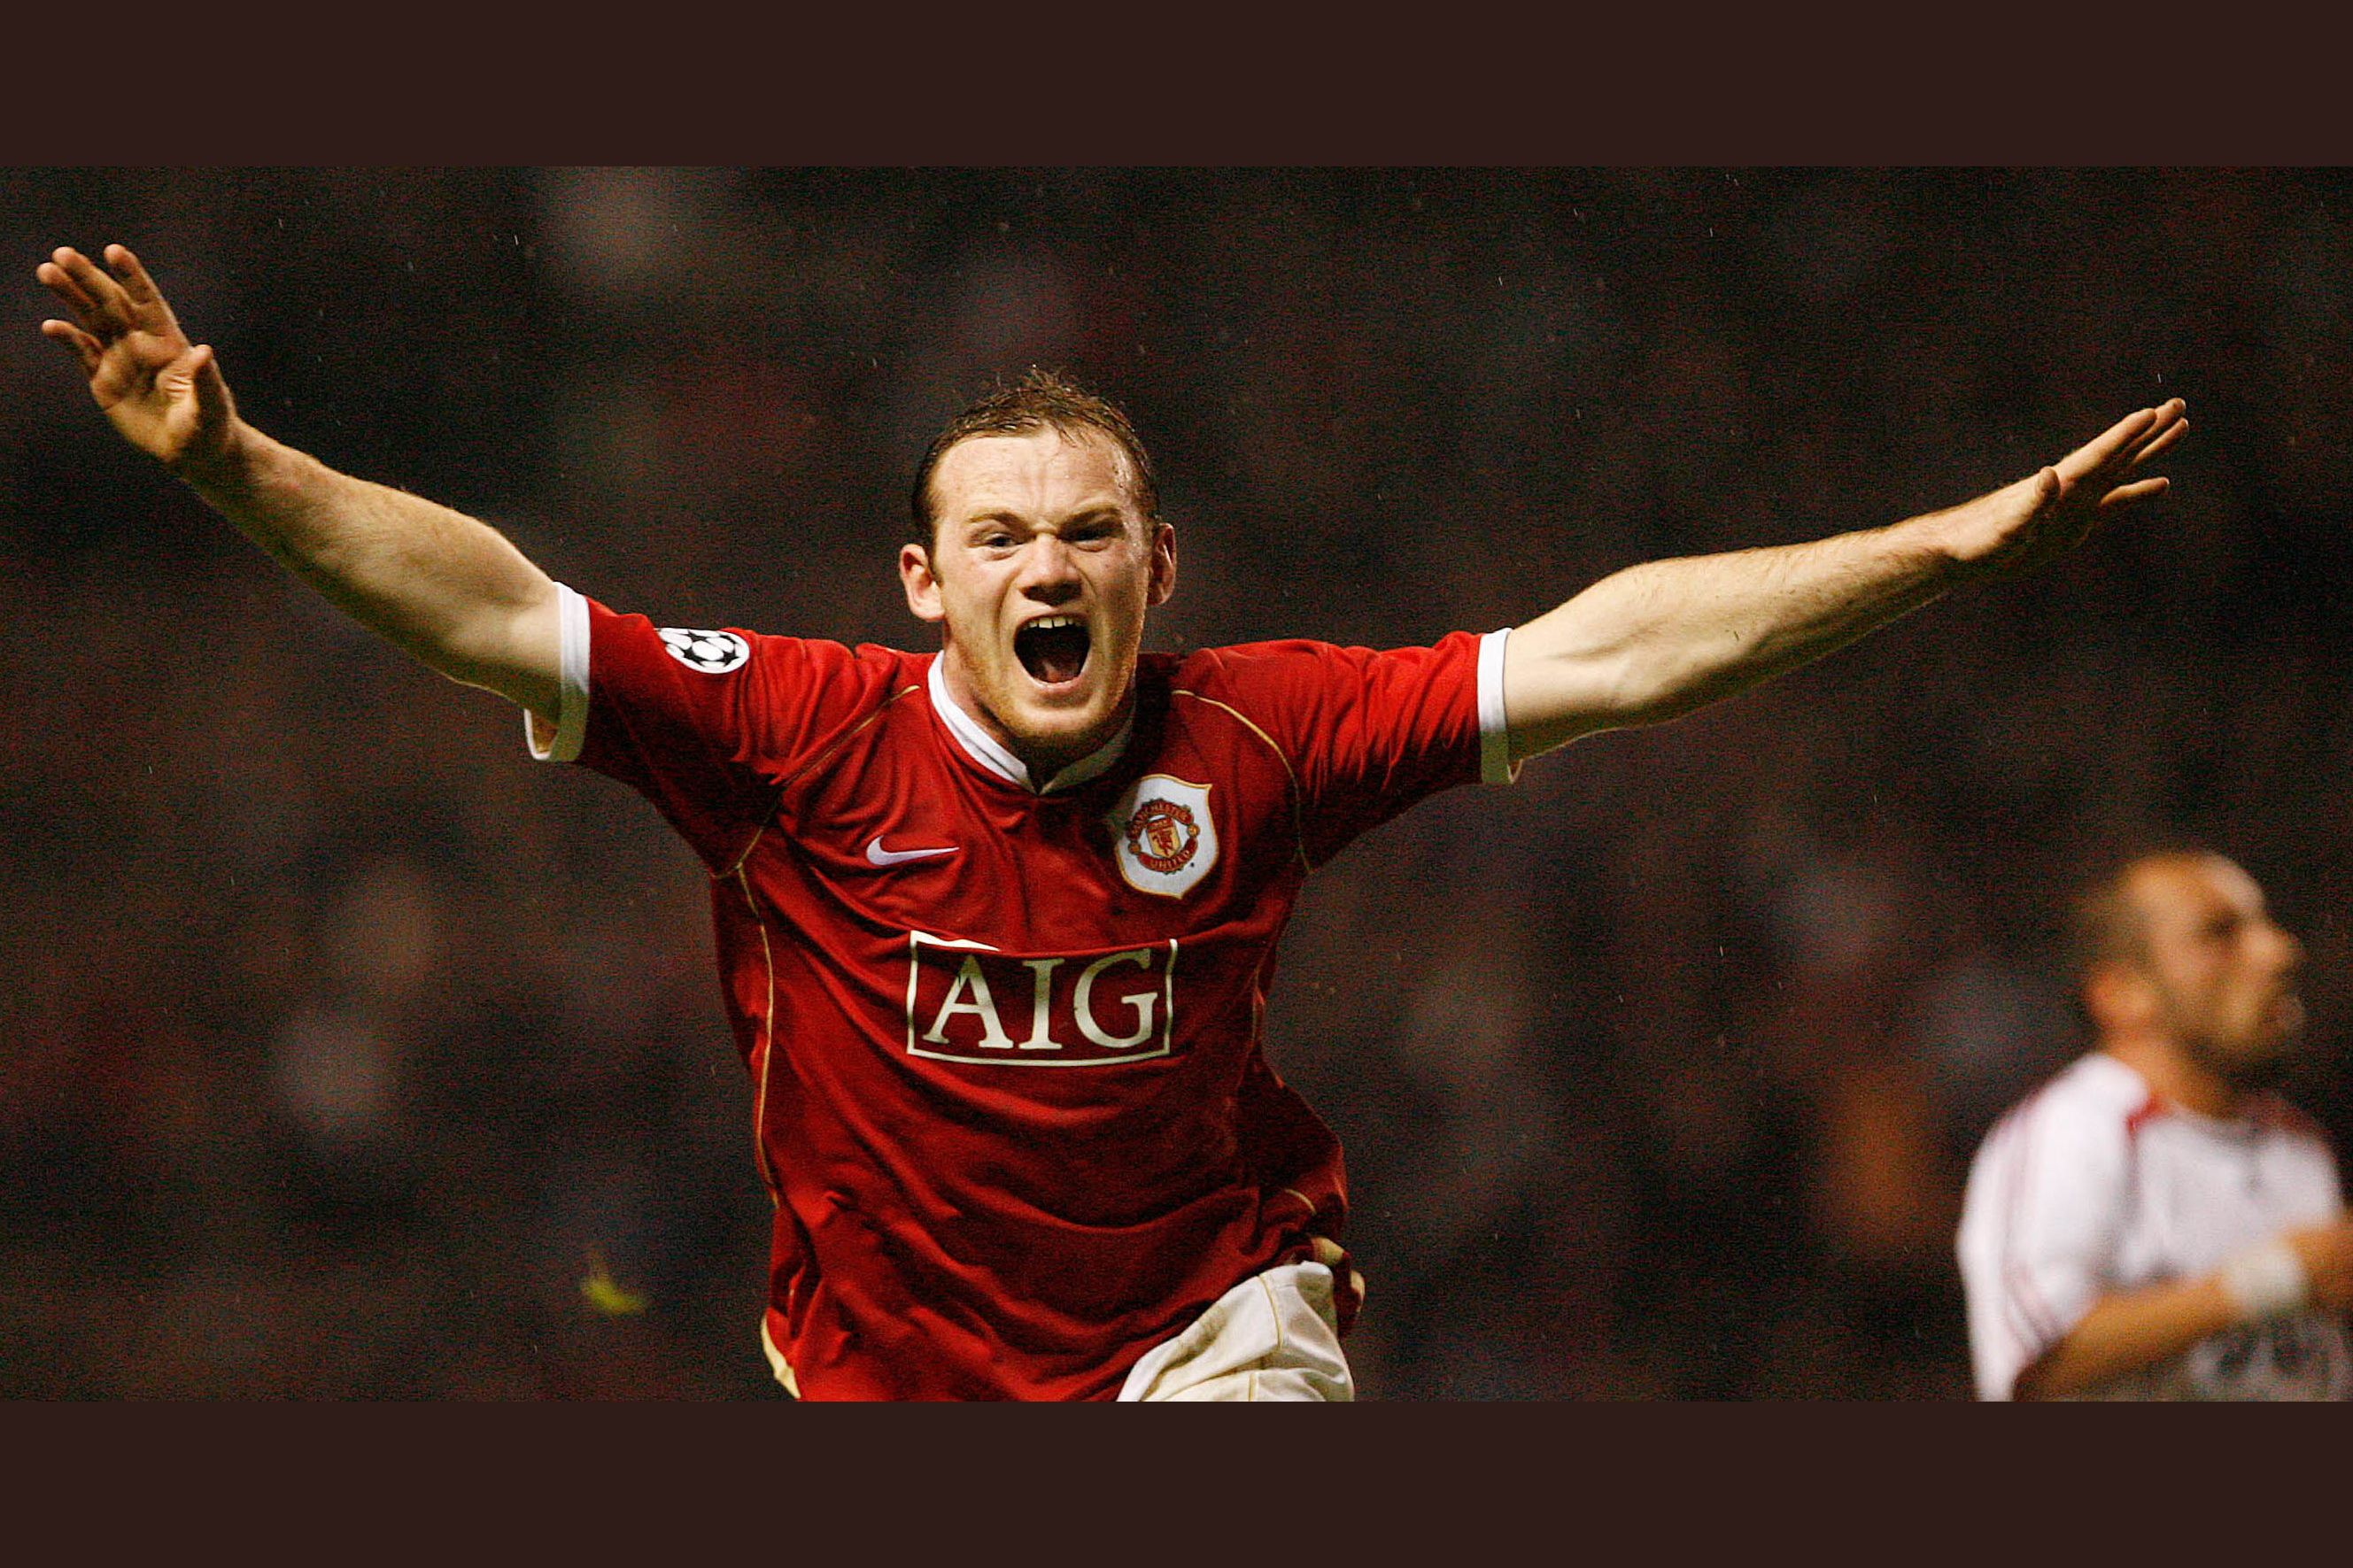 Your top Wayne Rooney goal